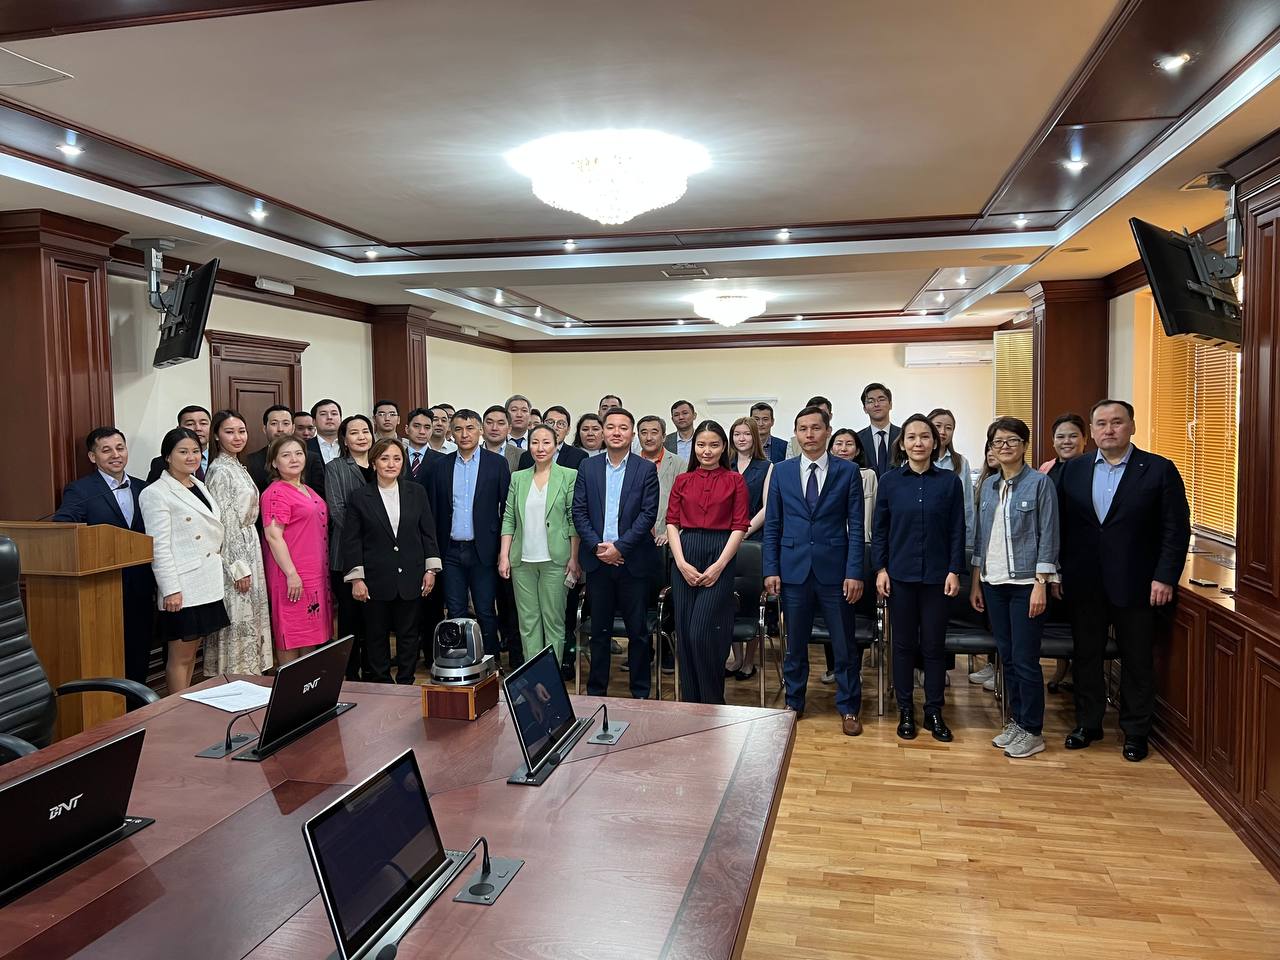 Сотрудники Министерства энергетики приняли участие в мероприятии по единовременному исполнению Государственного Гимна Казахстана